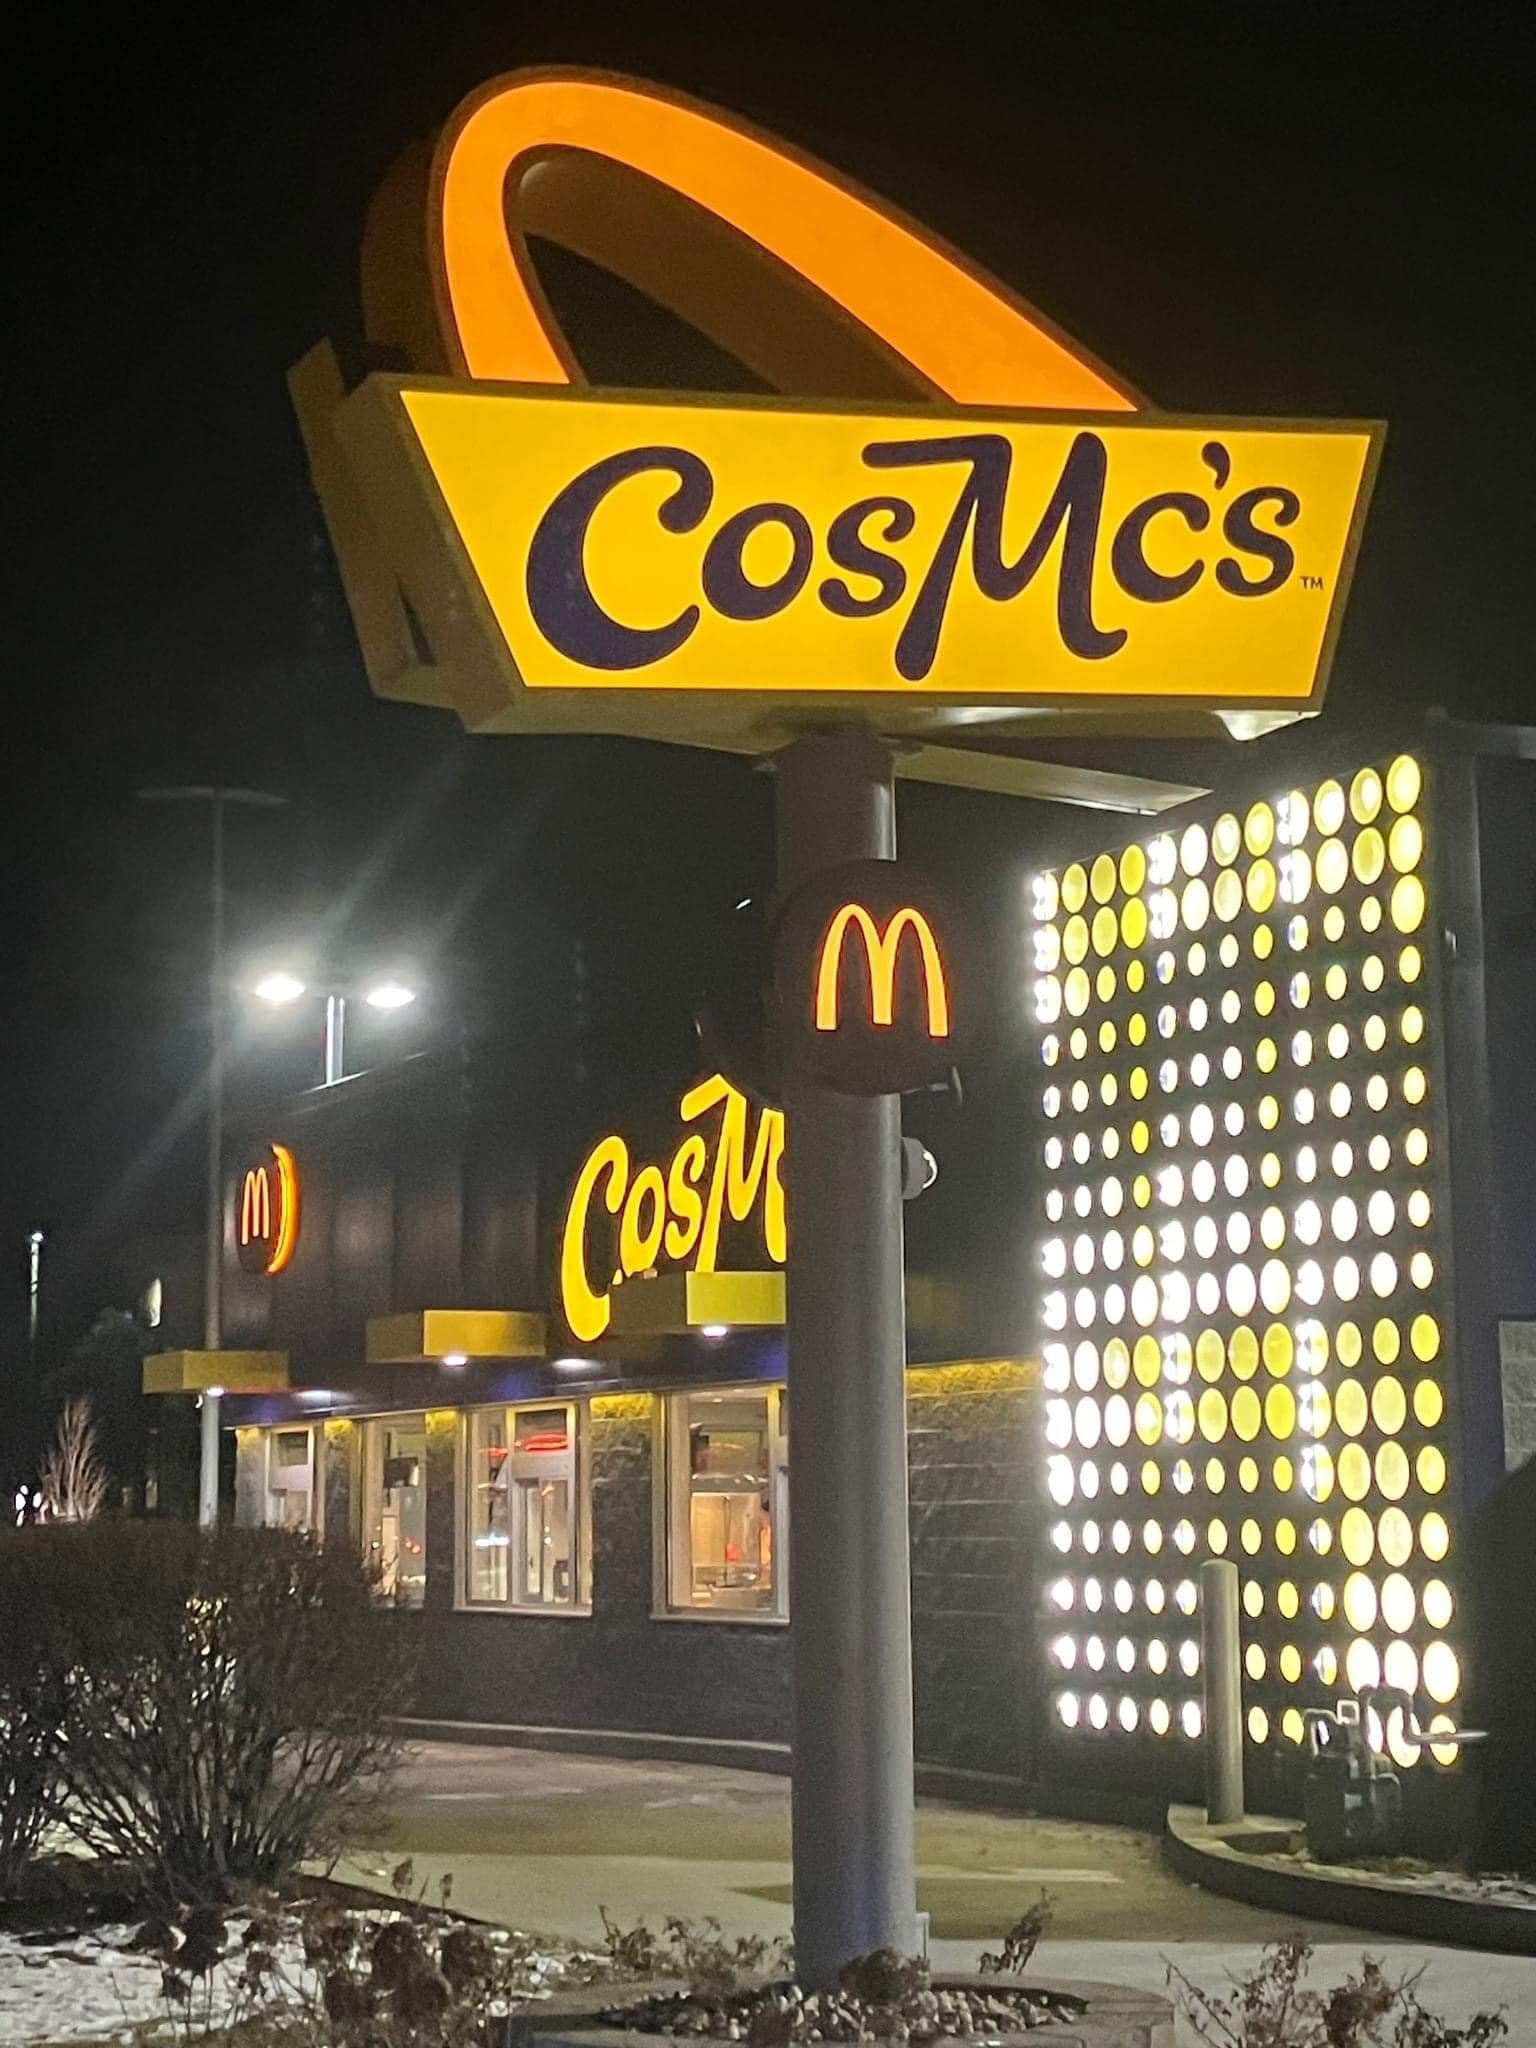 В ресторанах CosMc's, которые будут занимать меньшую площадь, чем типичные рестораны McDonald's, также тестируются различные планировки, включая несколько полос для проезда автомобилей